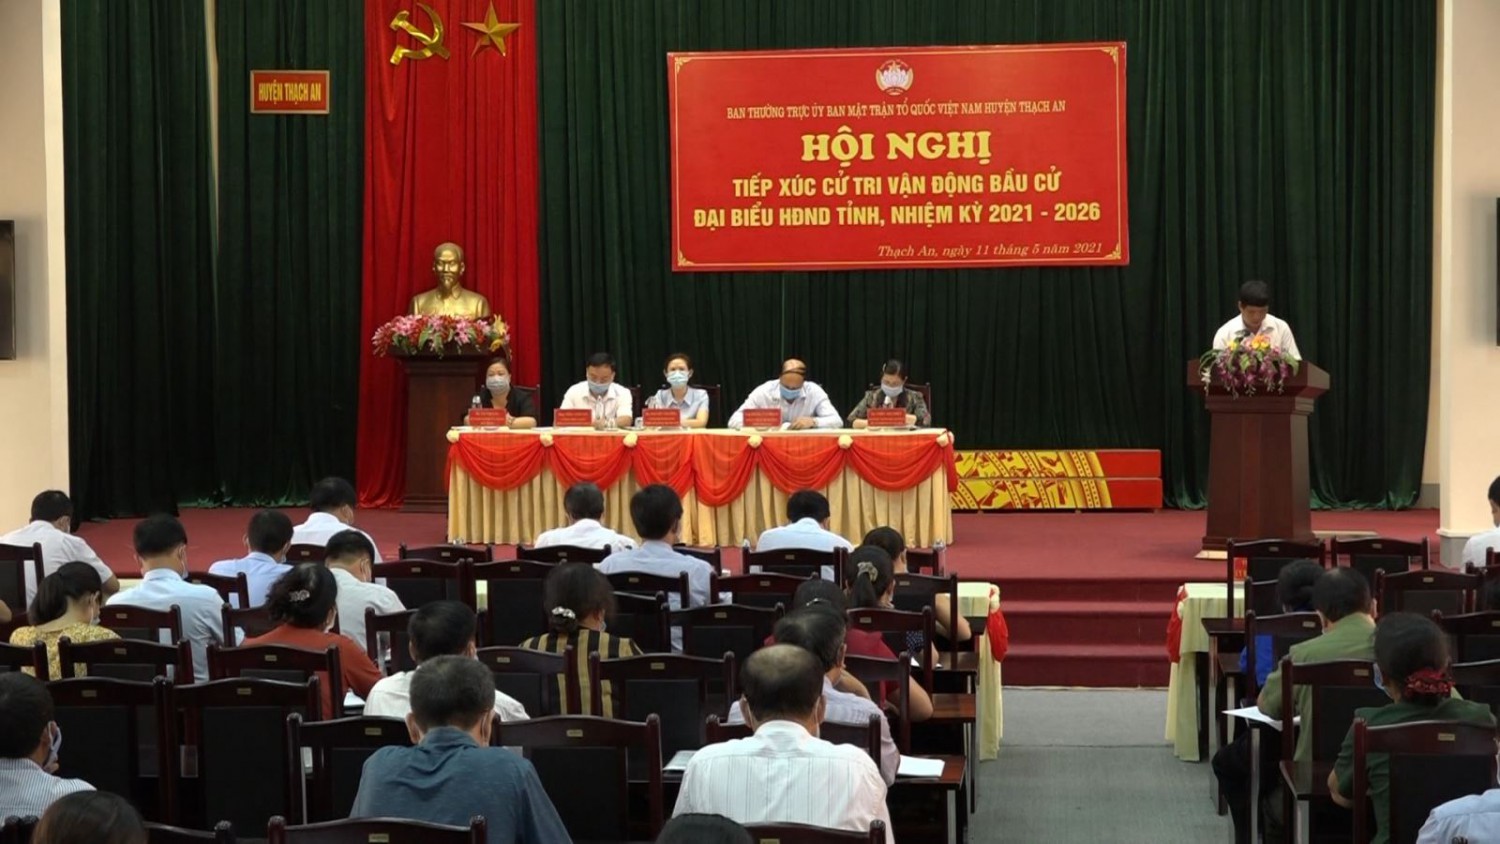 Ứng cử viên đại biểu HĐND tỉnh khóa XVII nhiệm kỳ 2021 - 2026 tiếp xúc cử tri tại huyện Thạch An.